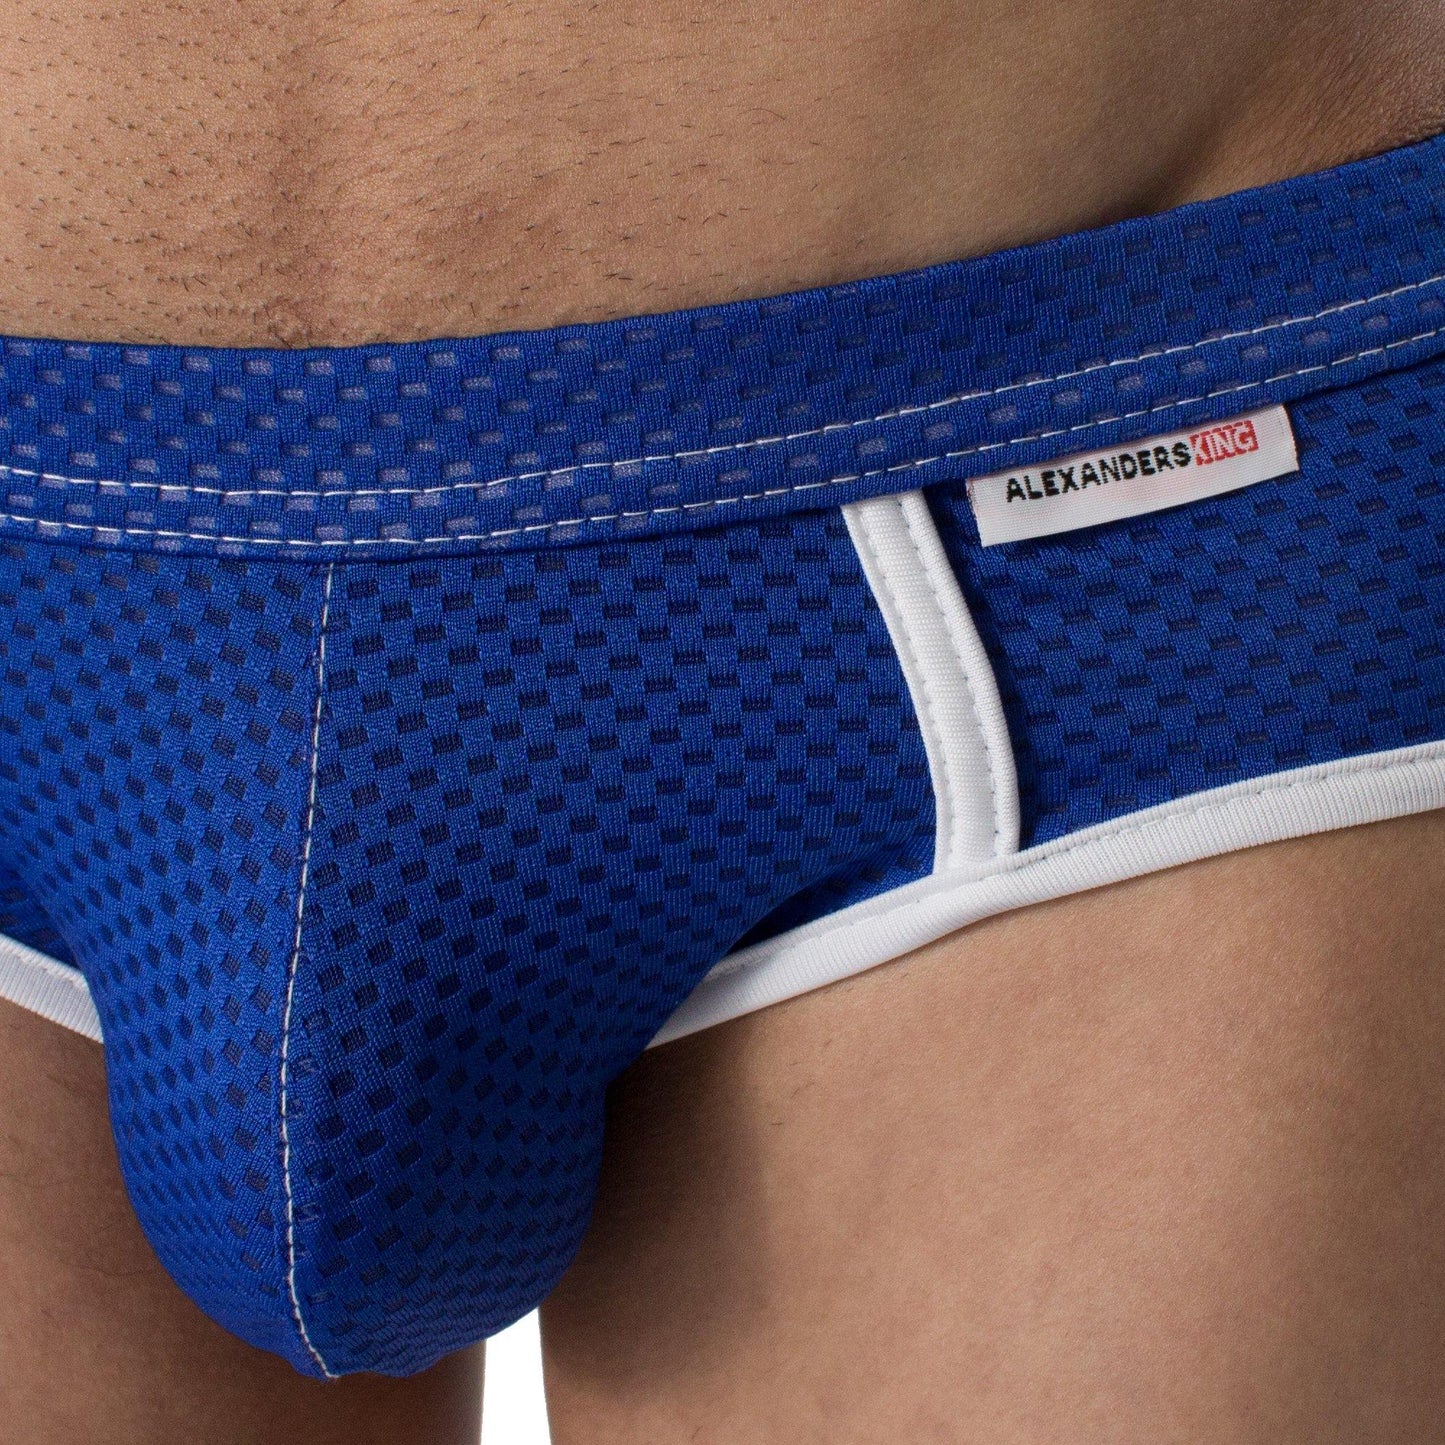 PB0004 - Brief Chroma Azul Rey Unwet - AlexandersKing Underwear